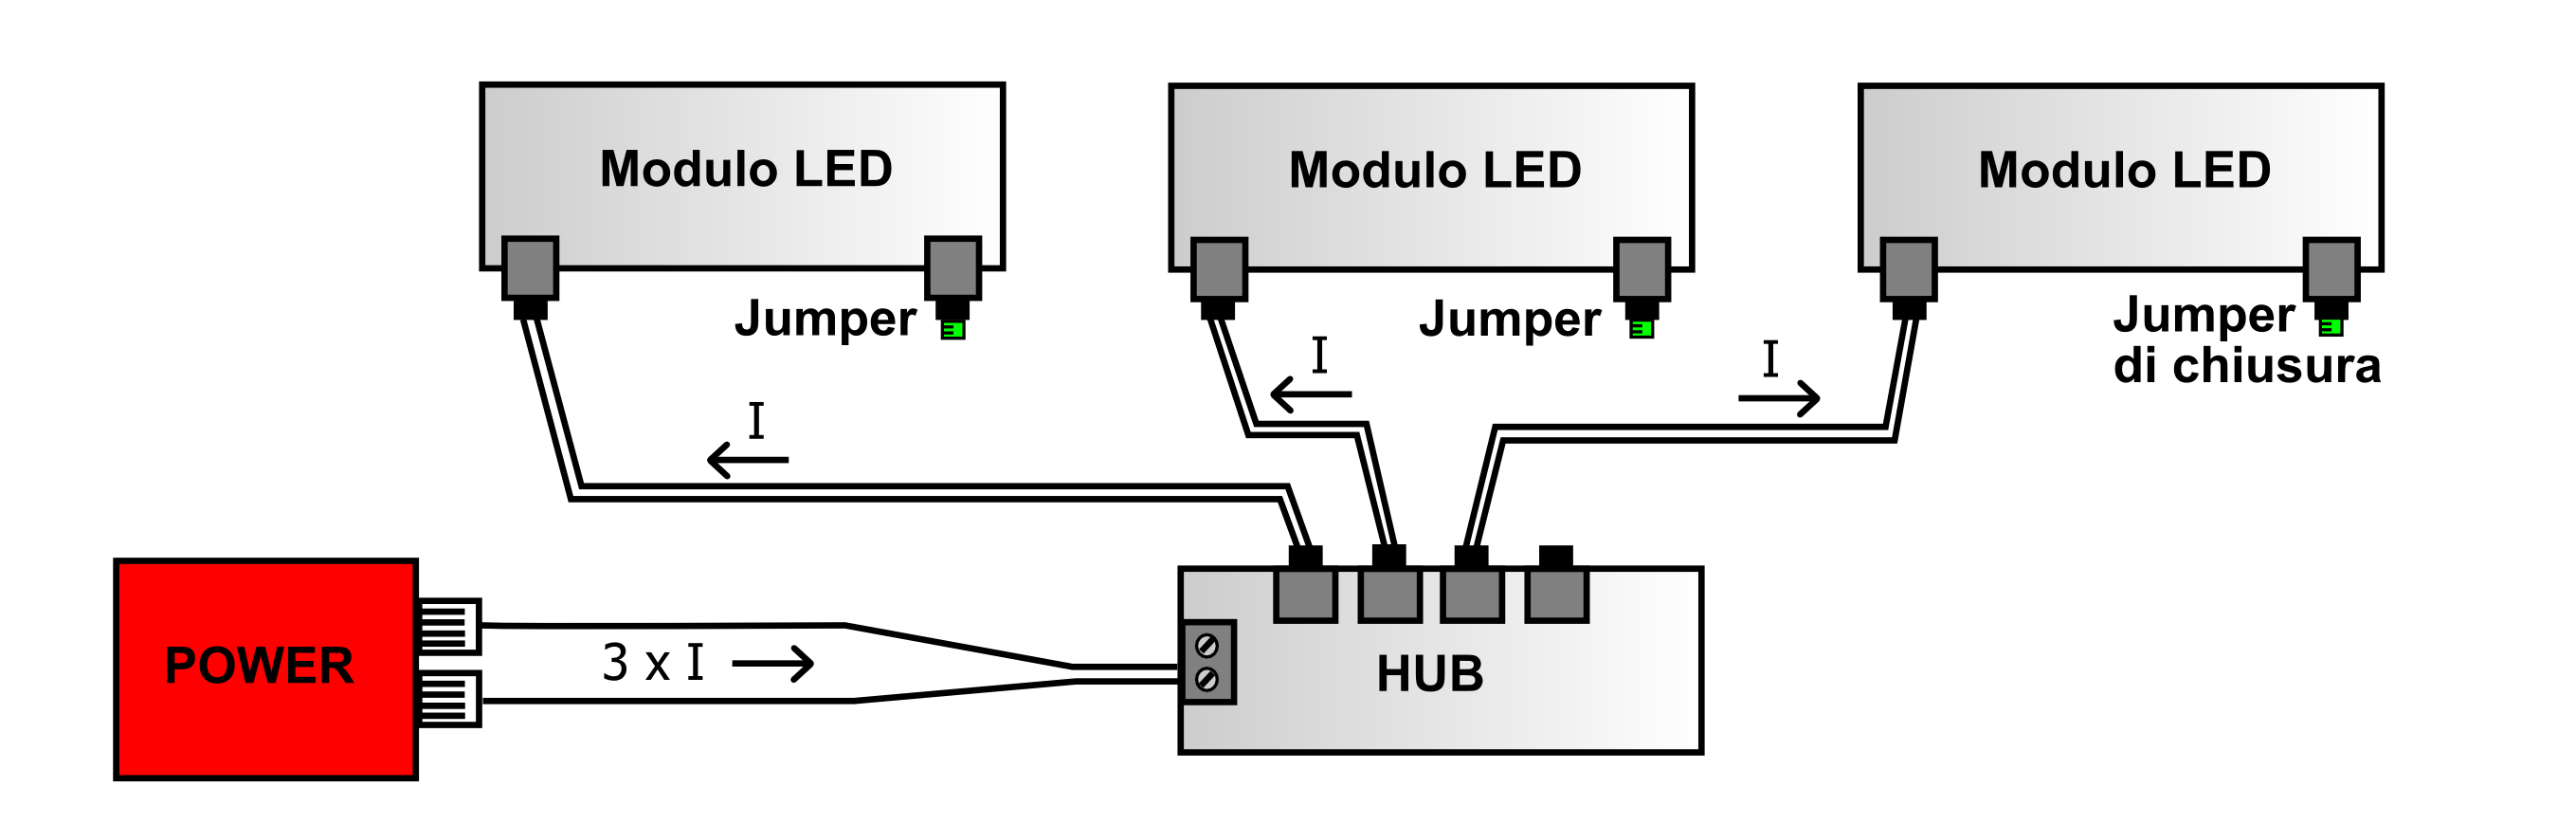 COLLEGAMENTI TRA MODULI Serie: Tutti i moduli led dotati di 2 connettori consentono un collegamento in serie tra loro. Per semplicità si considerino moduli tutti dello stesso tipo.